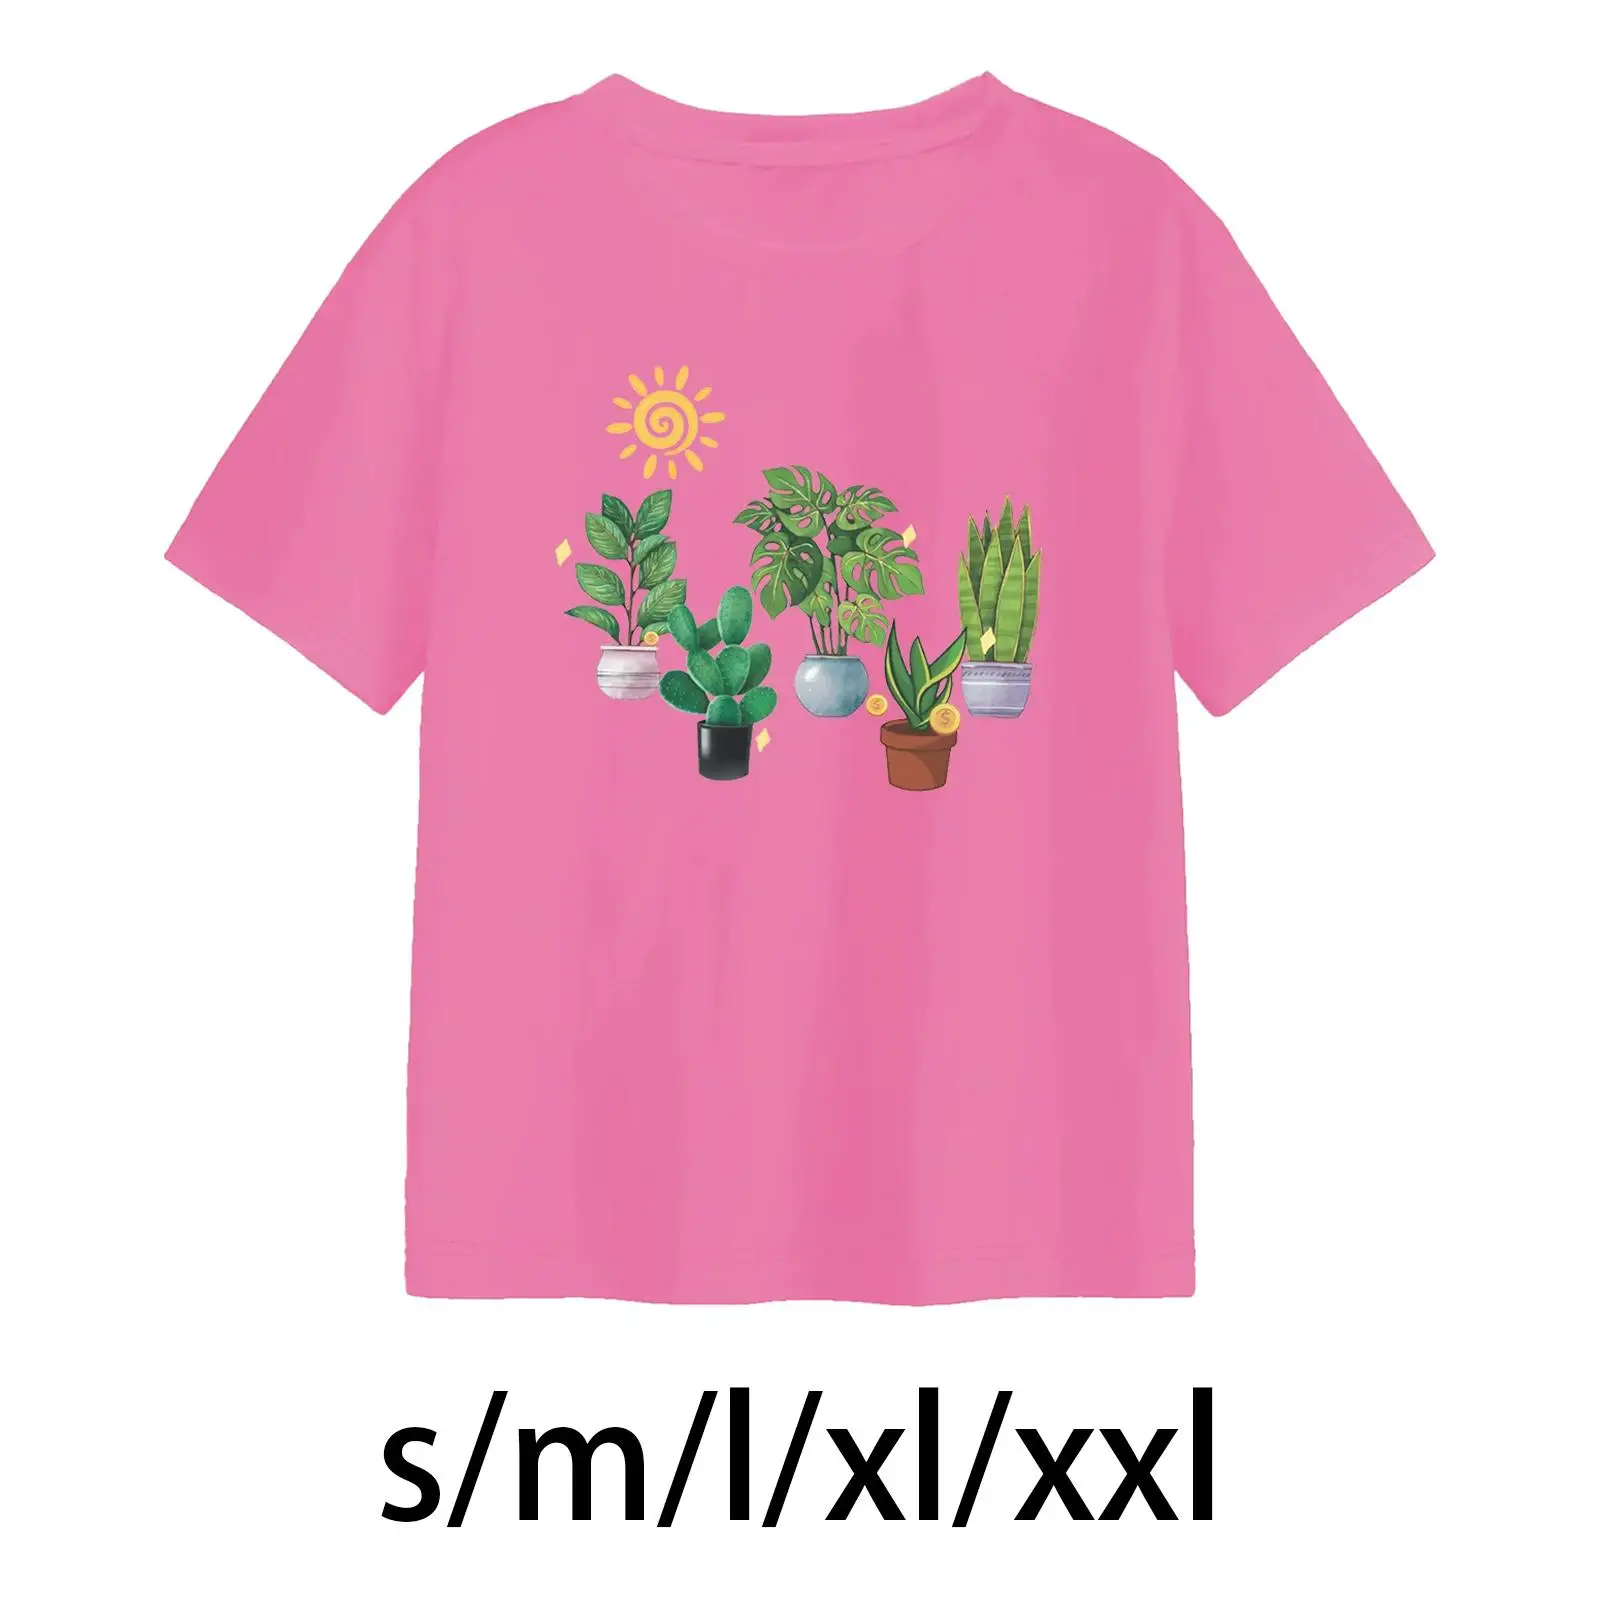 

Женская футболка с коротким рукавом, базовая футболка, повседневная одежда, футболки с вырезом лодочкой, топы, женские футболки с буквенным принтом, уличная одежда, розовый цвет